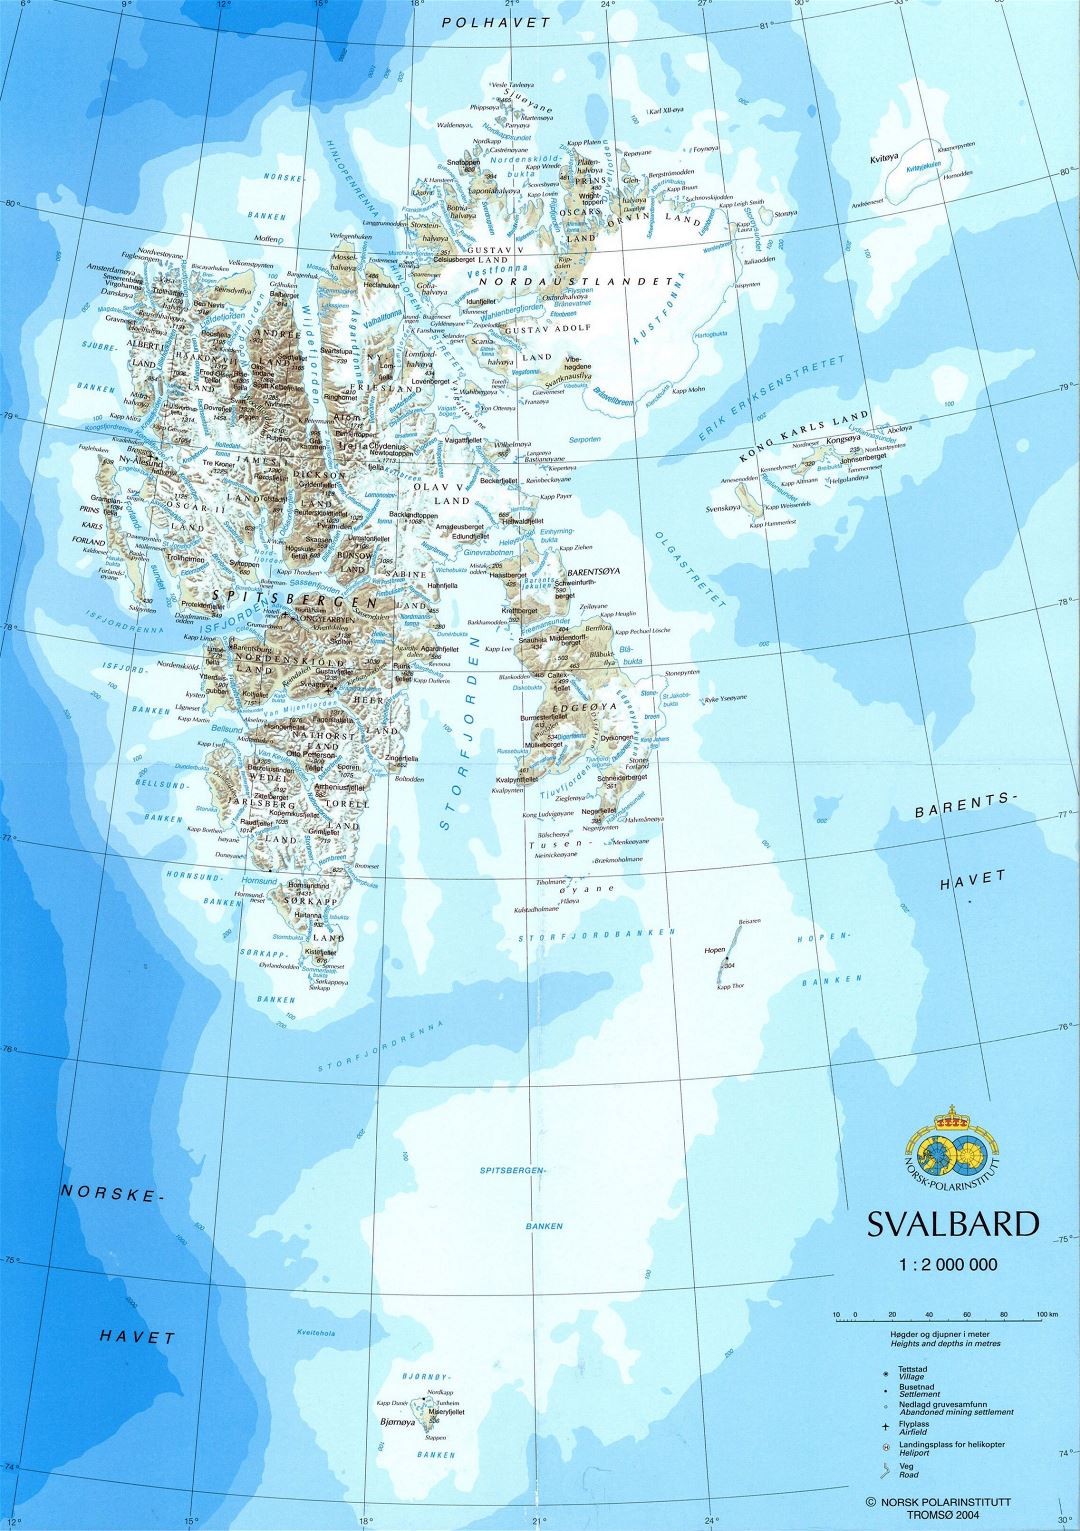 Grande detallado mapa de Svalbard con relieve, carreteras, ciudades y aeropuertos